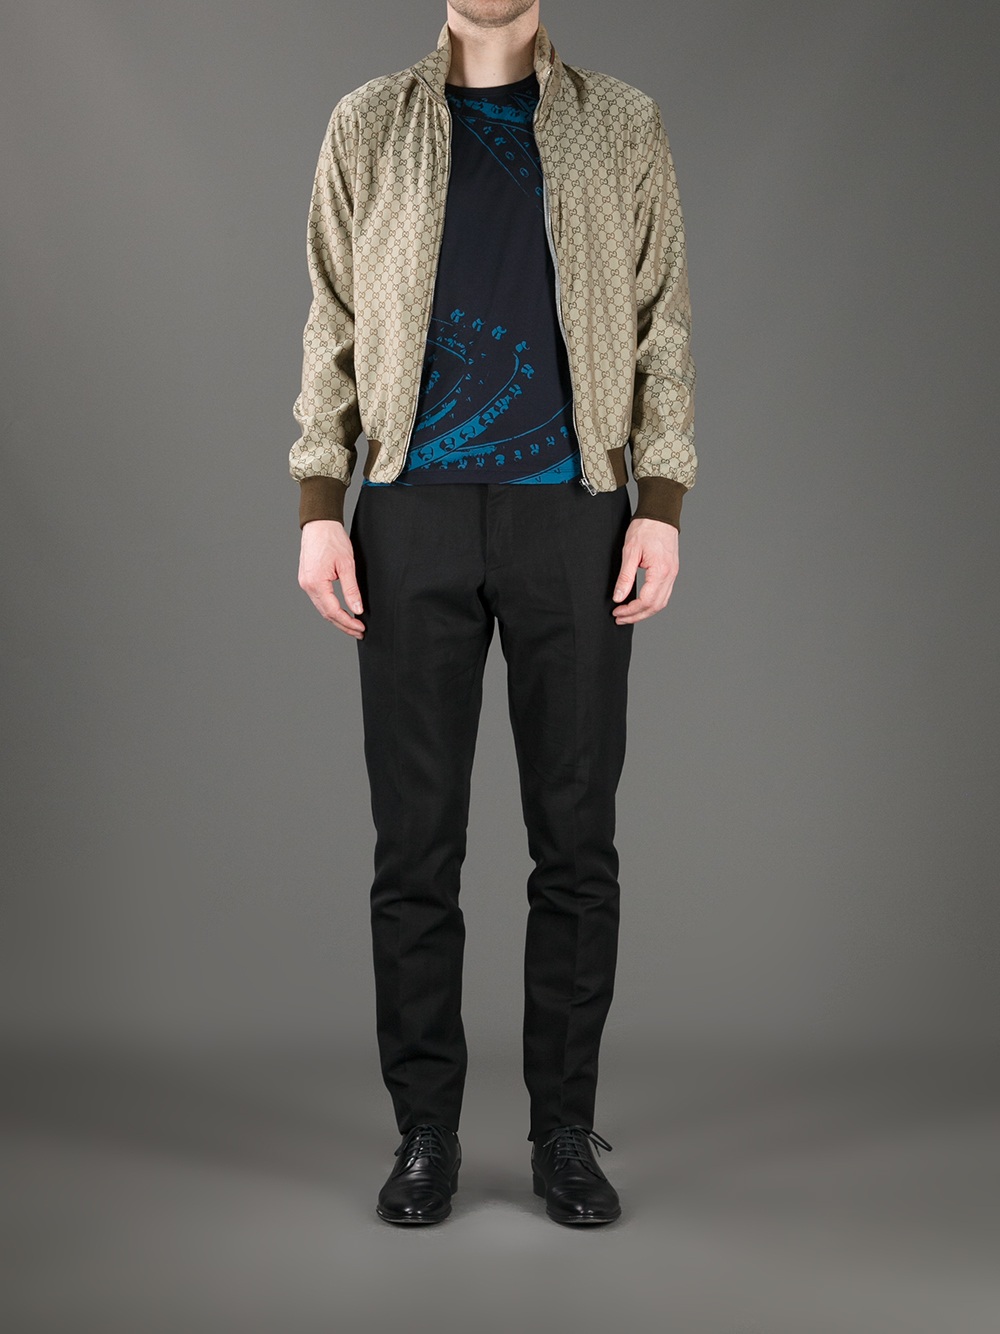 Gucci Jackets for Men, Men's Designer Jackets